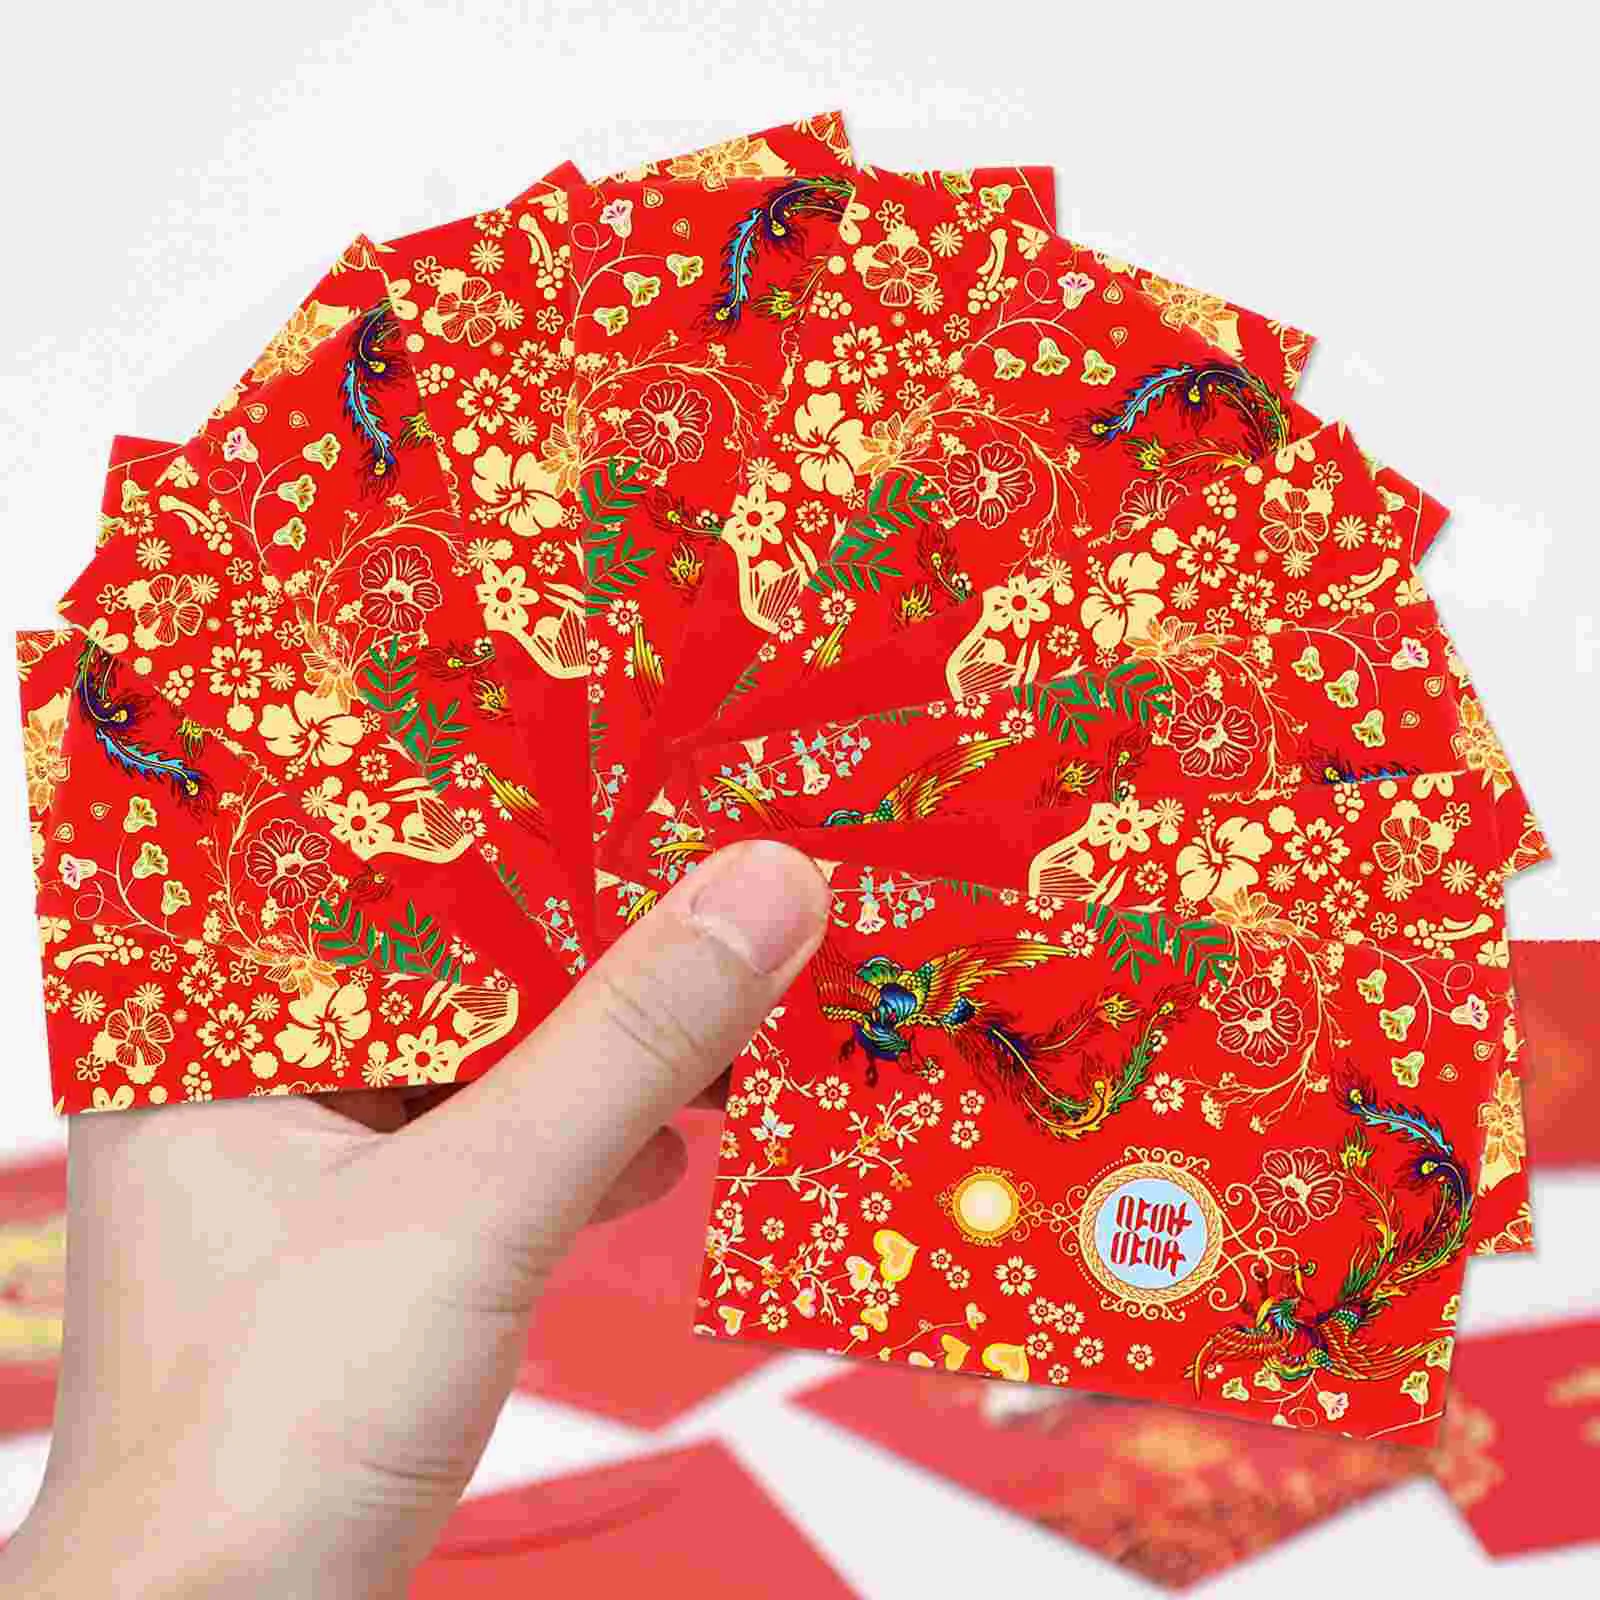 

80 шт. 2021 китайский красный пакет Подарочный конверт для невесты свадебные деньги конверты азиатские подарки бумага Hong Bao